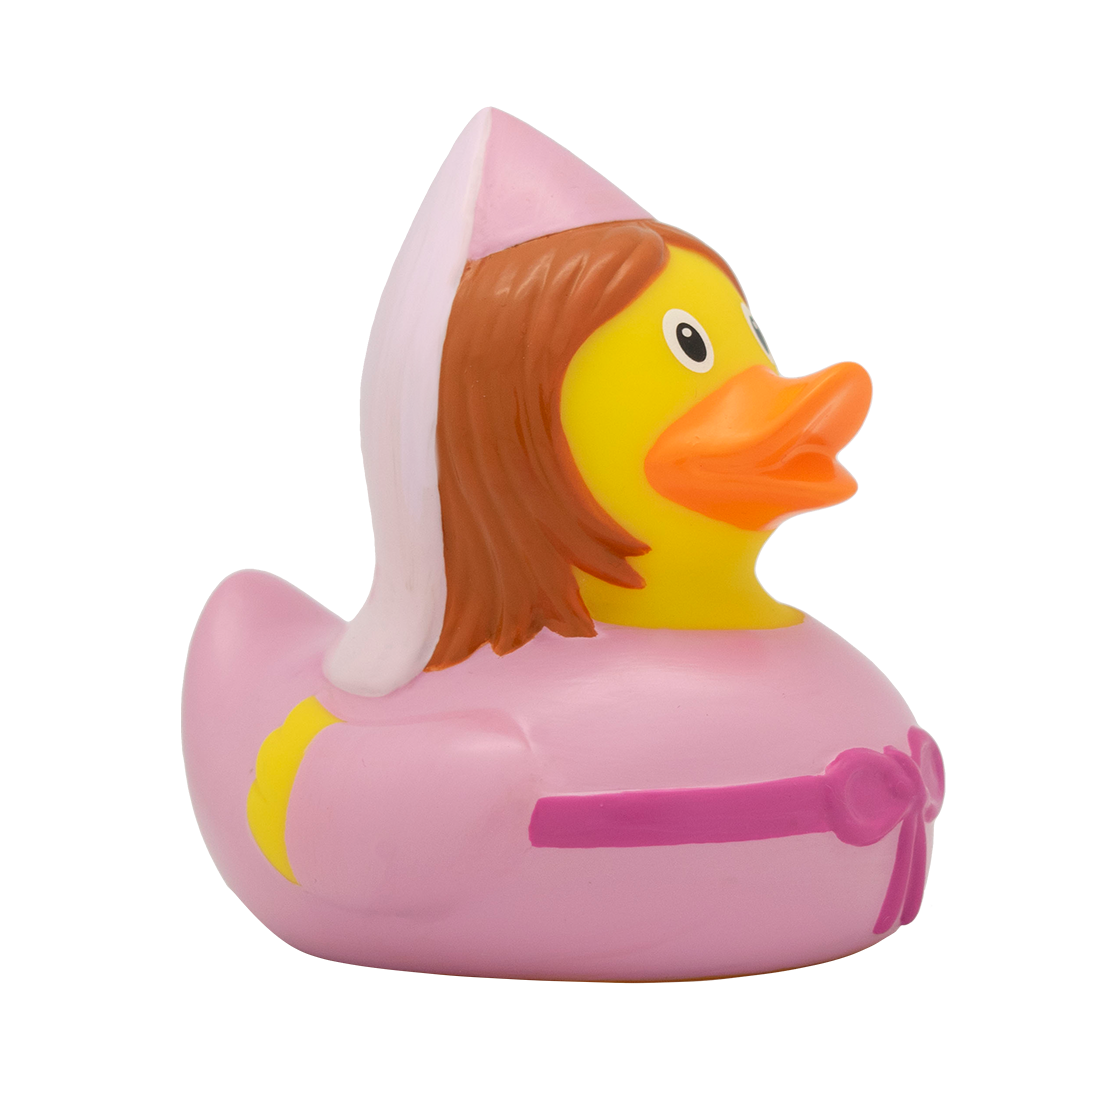 Fairy fairytale duck